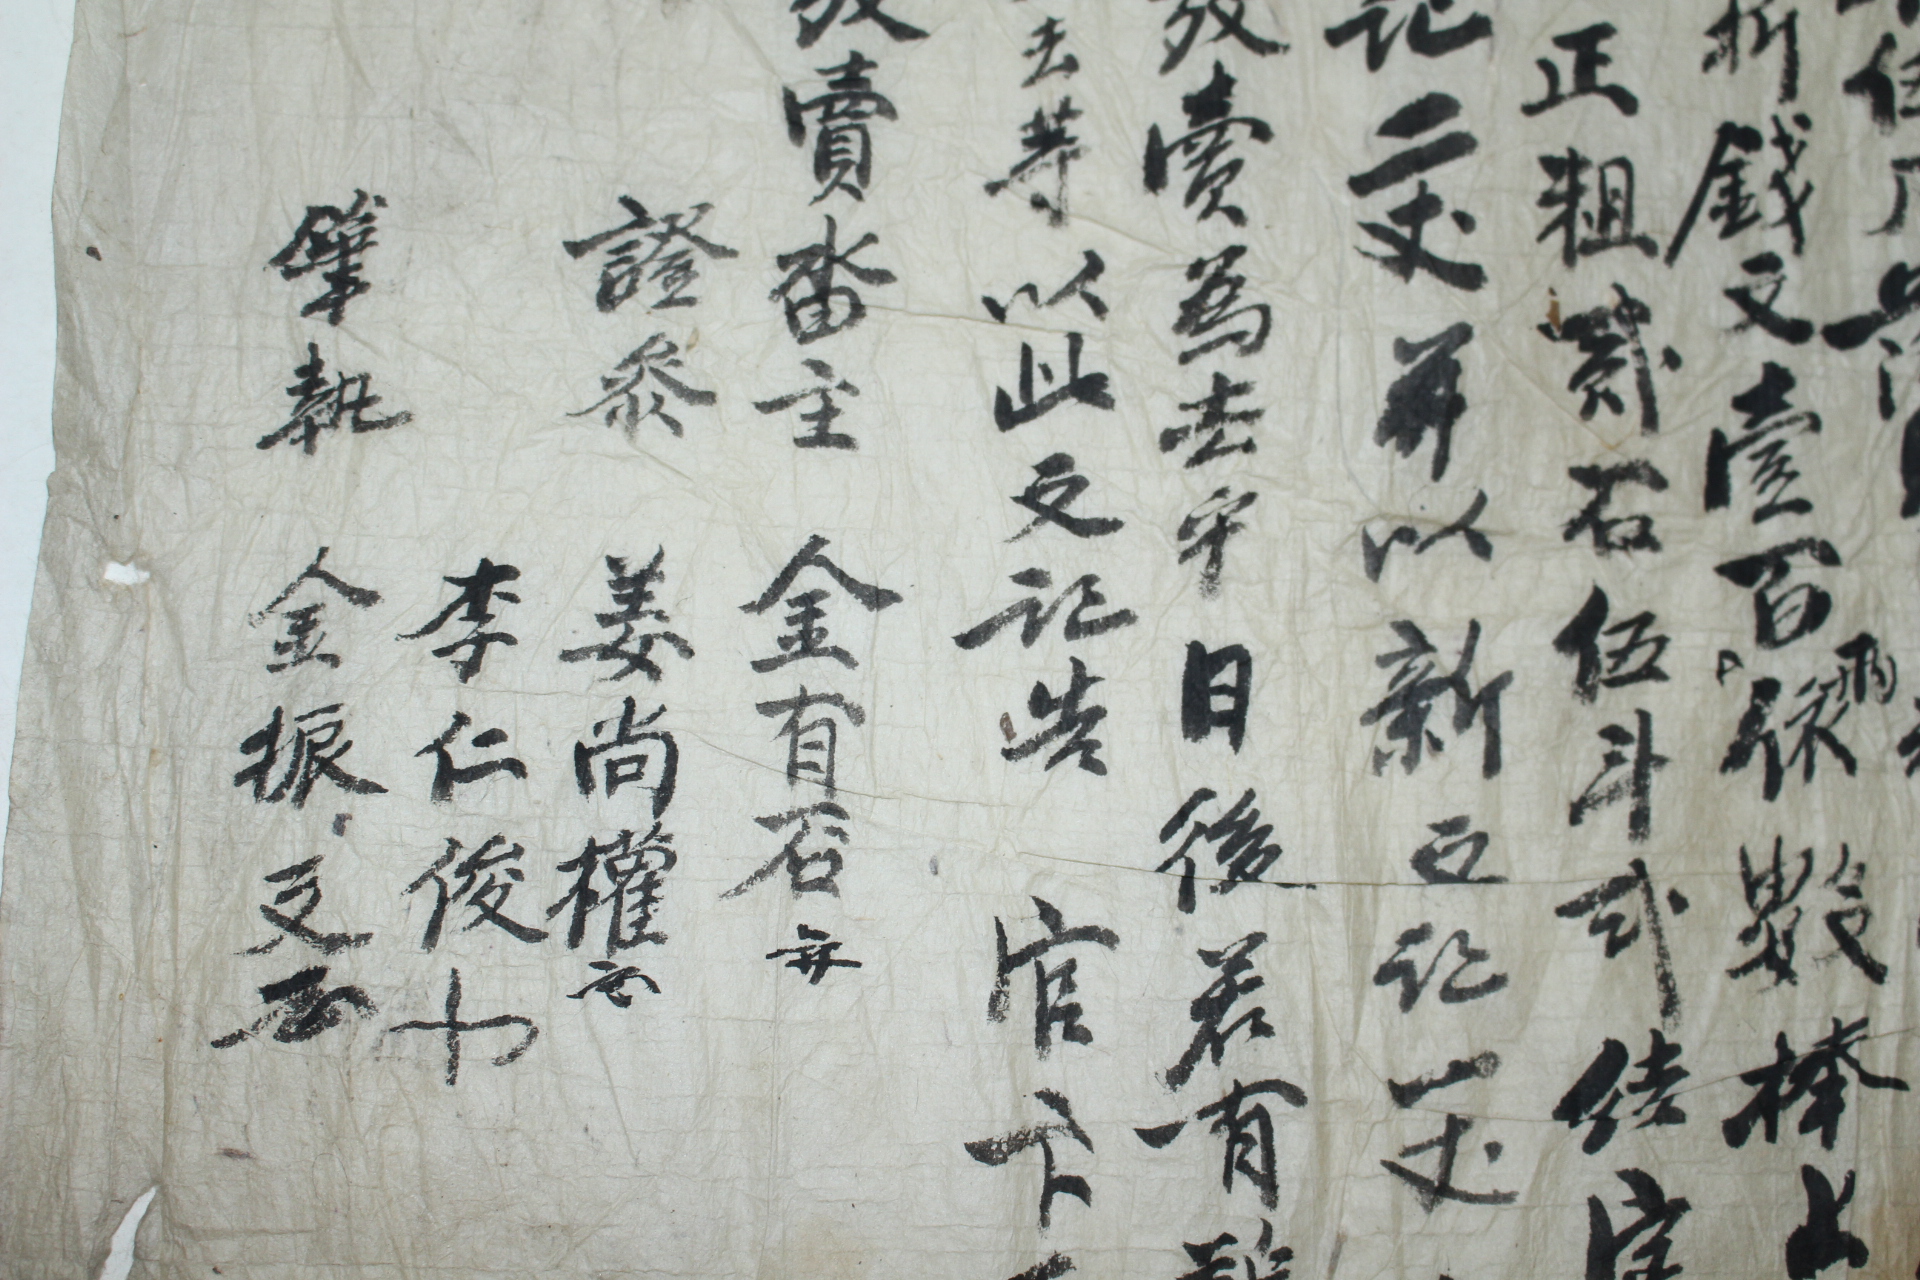 조선시대 동치년간 논관련 명문